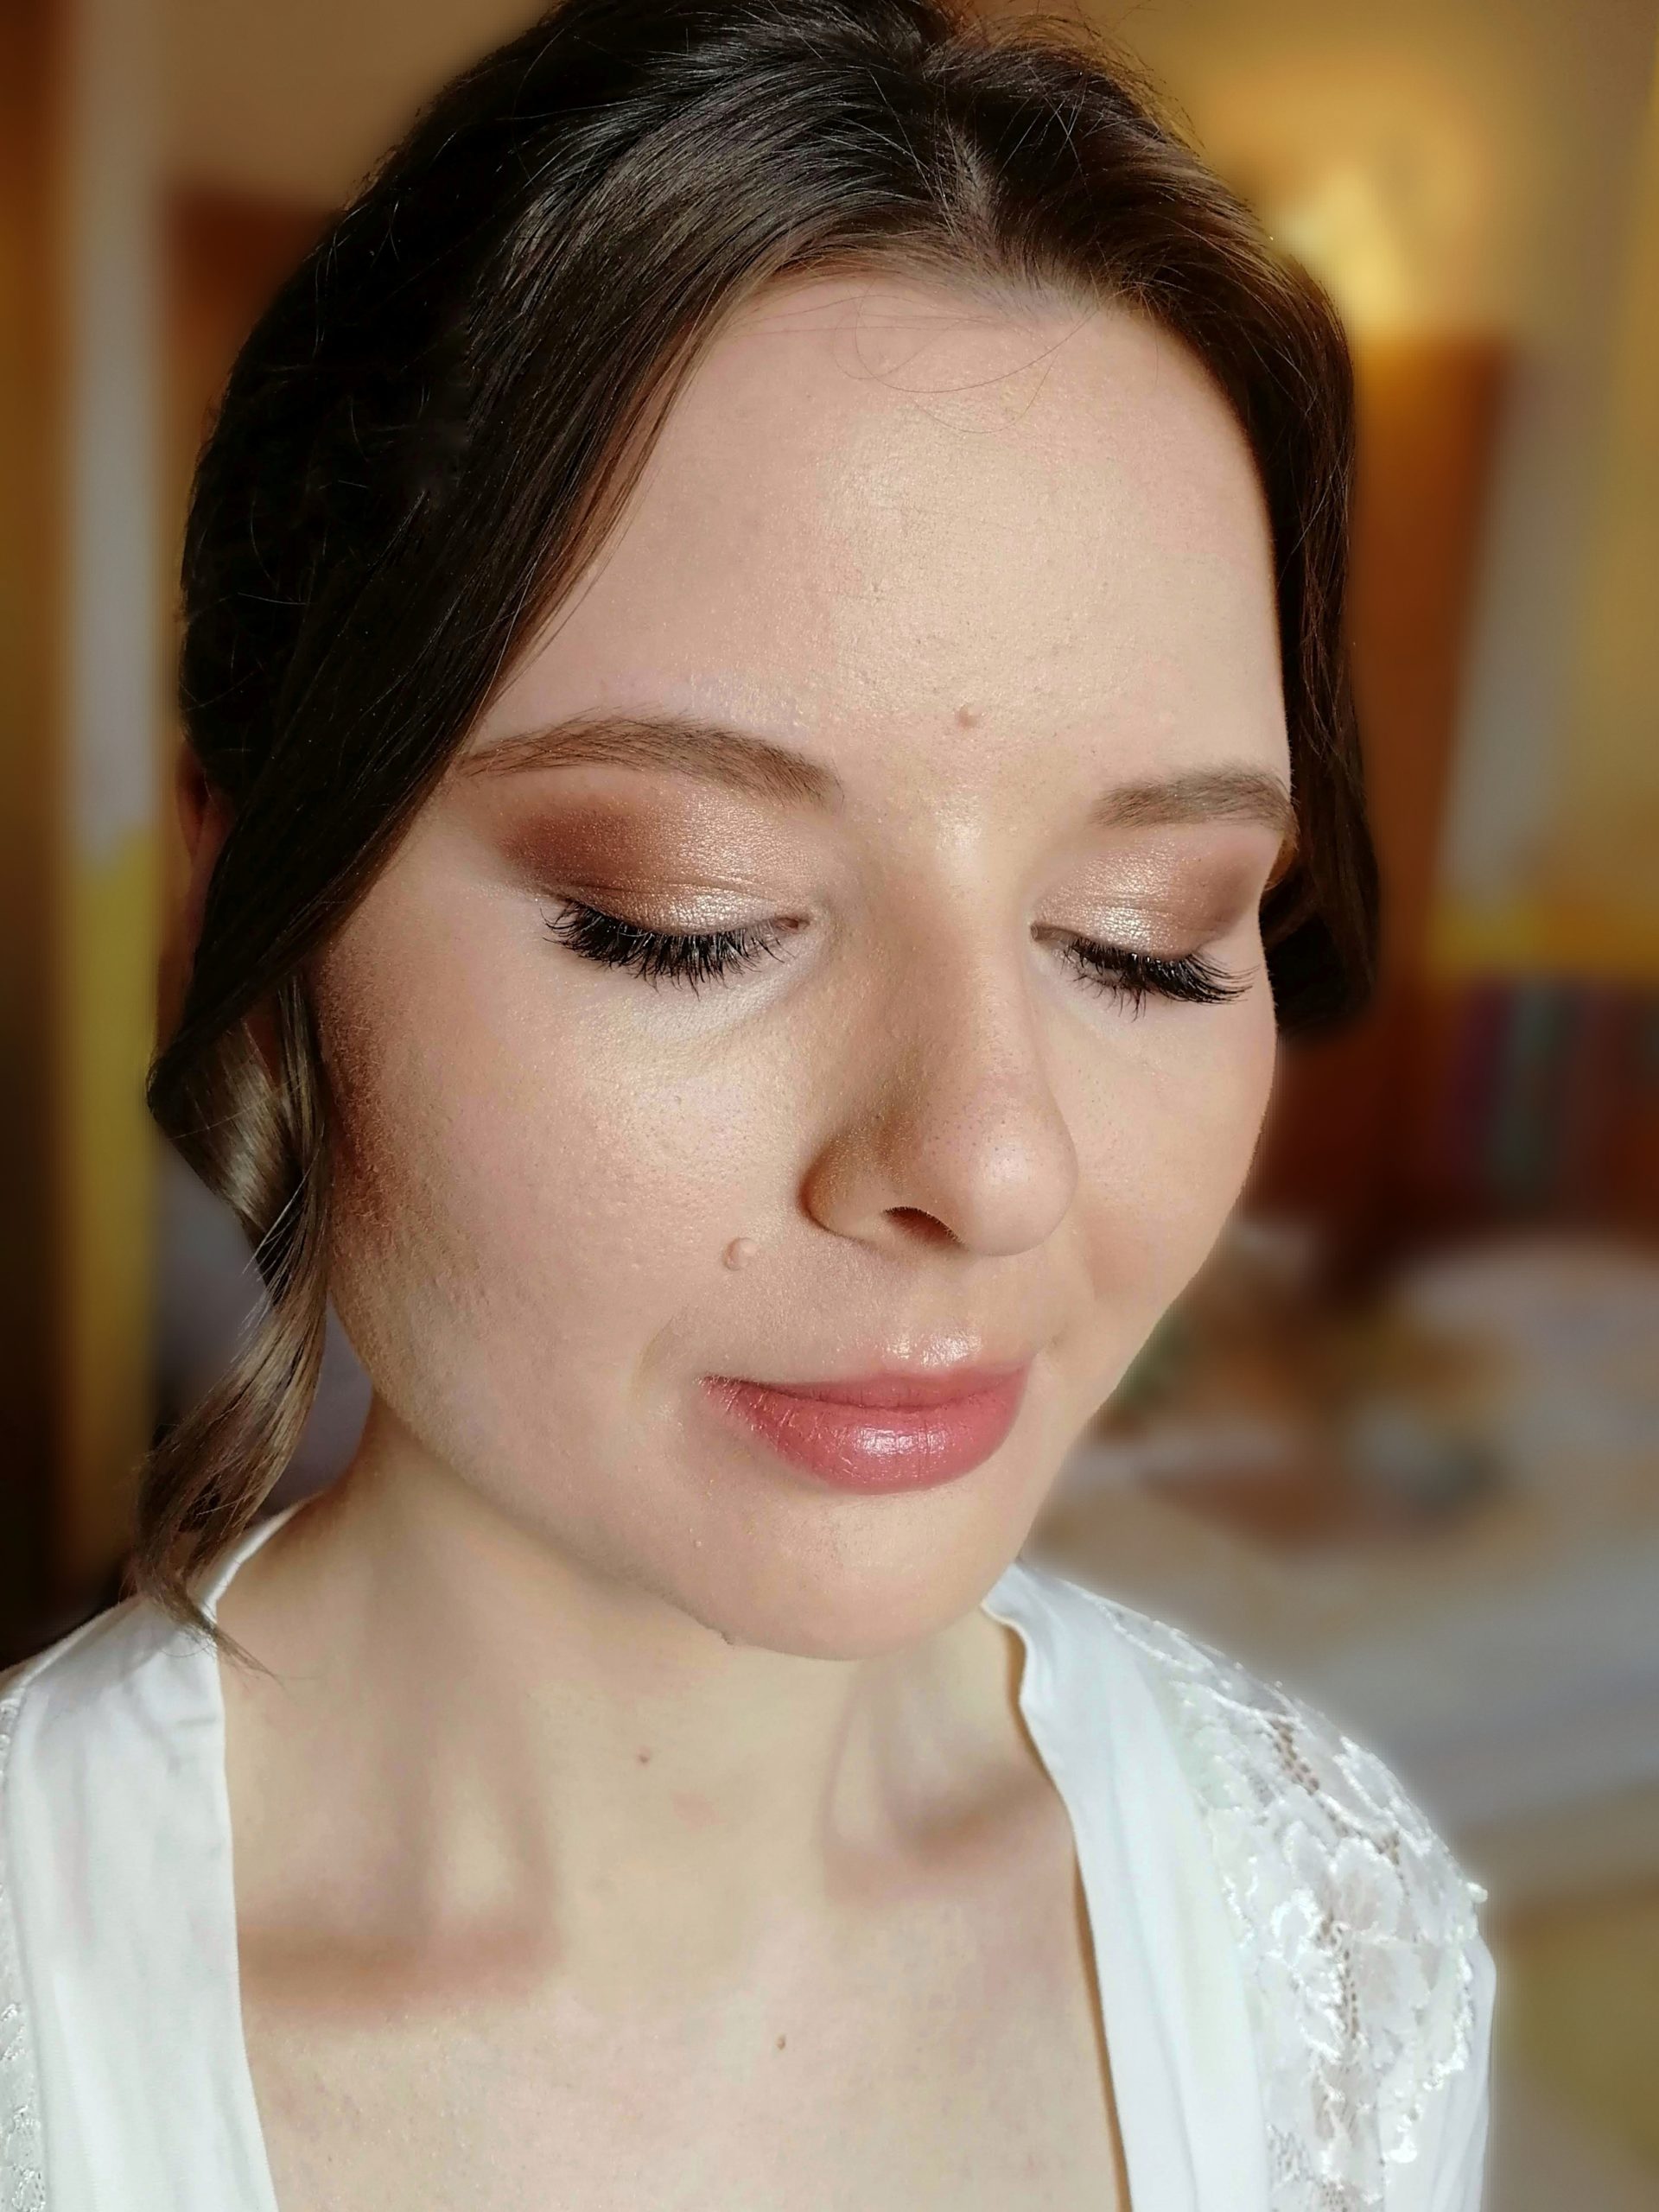 Braut Make-Up in eleganten Peach und Goldtönen mit glossy natürlichen Lippen